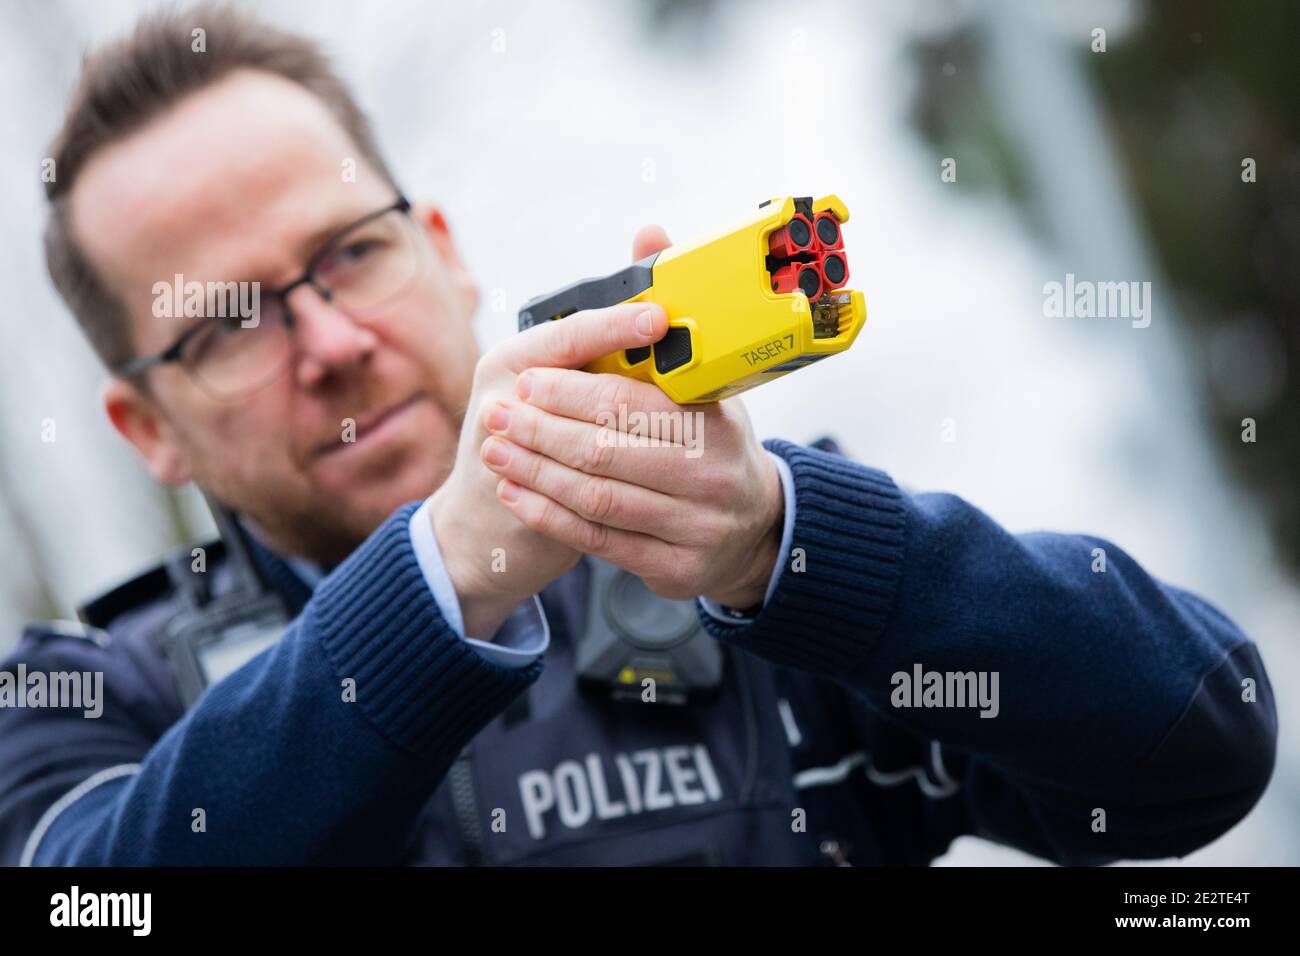 Dortmund, Alemania. 15 de enero de 2021. Un agente de policía demuestra un  dispositivo de impulso eléctrico a distancia (DEIG o también Taser) en modo  de entrenamiento sin munición activa. El dispositivo